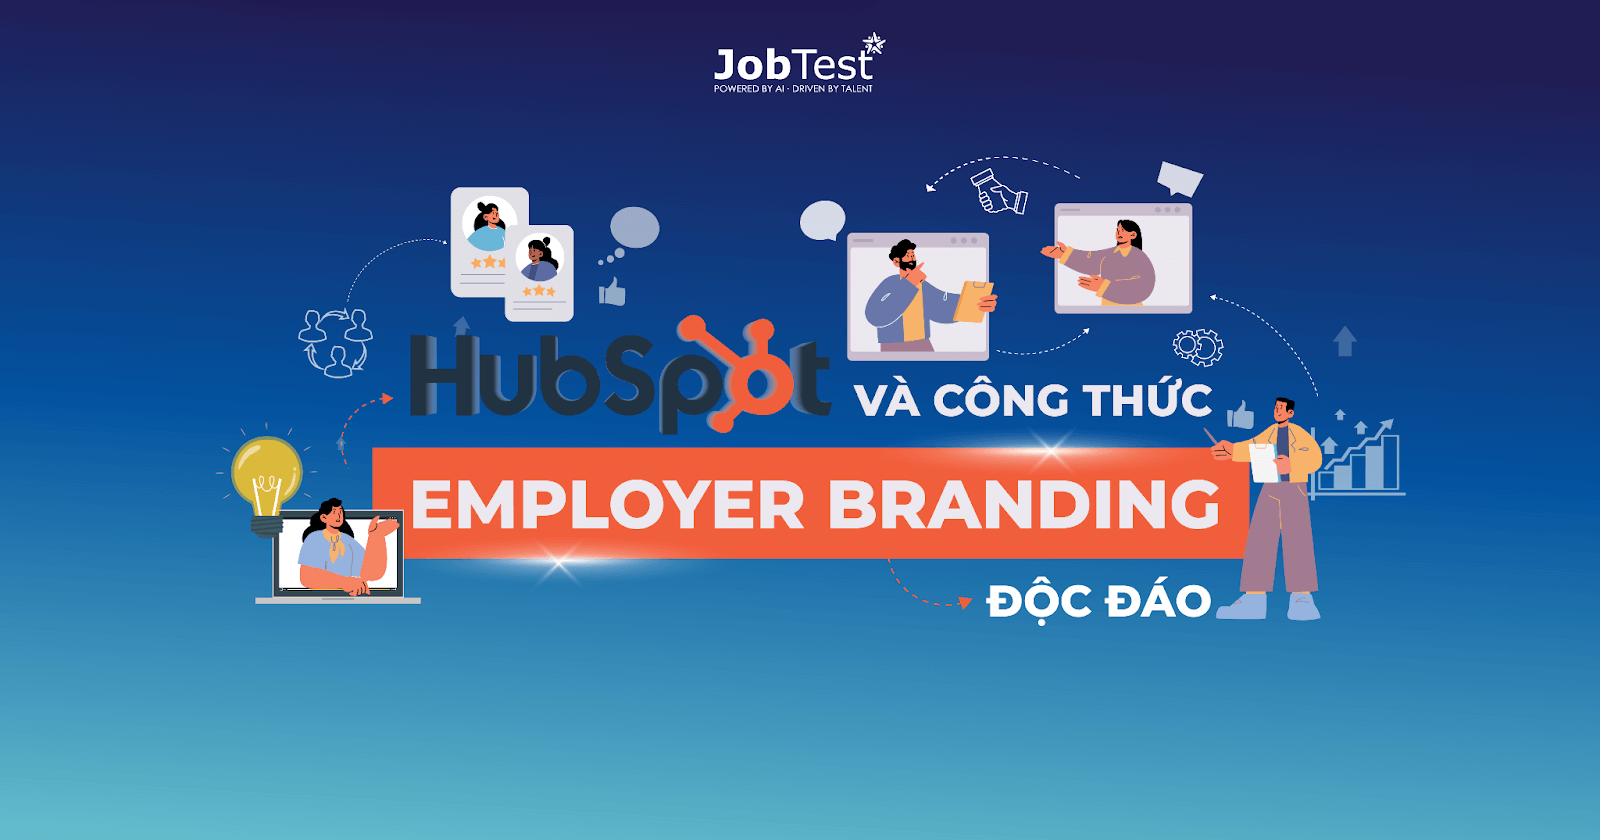 case-study-hubspot-va-cong-thuc-employer-branding-doc-dao-thumbnail